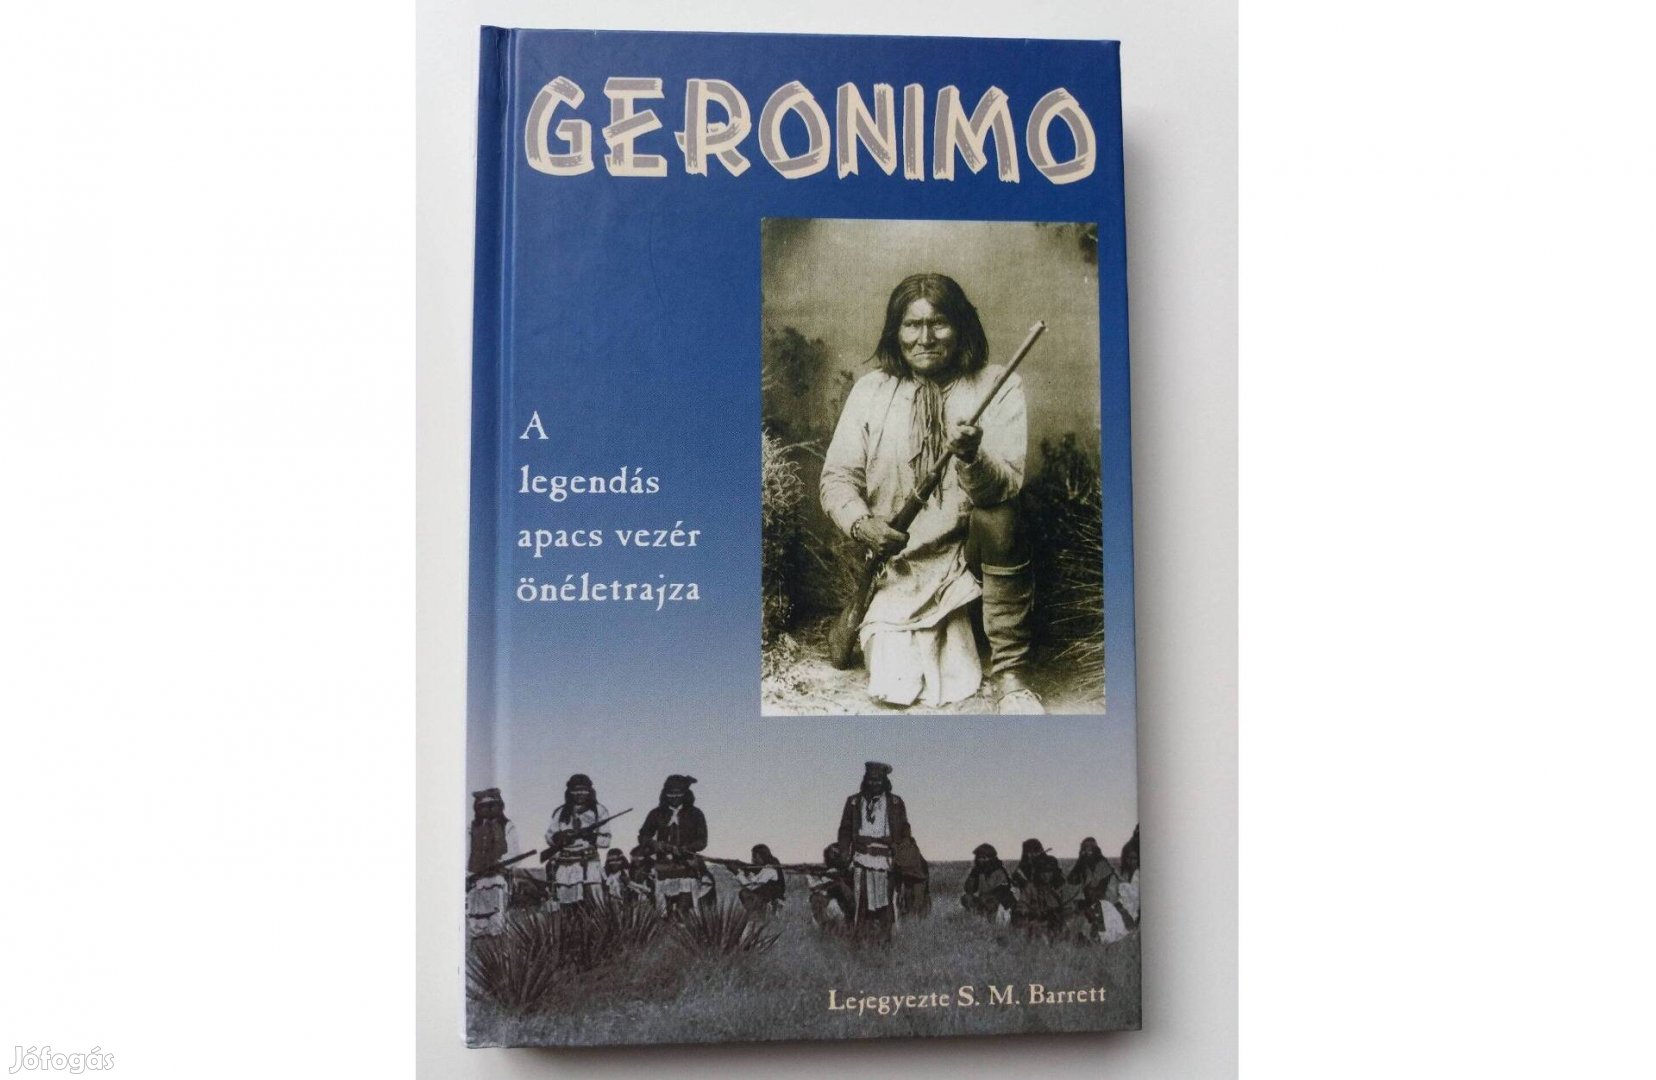 S. M. Barrett: Geronimo (A legendás apacs vezér önéletrajza)